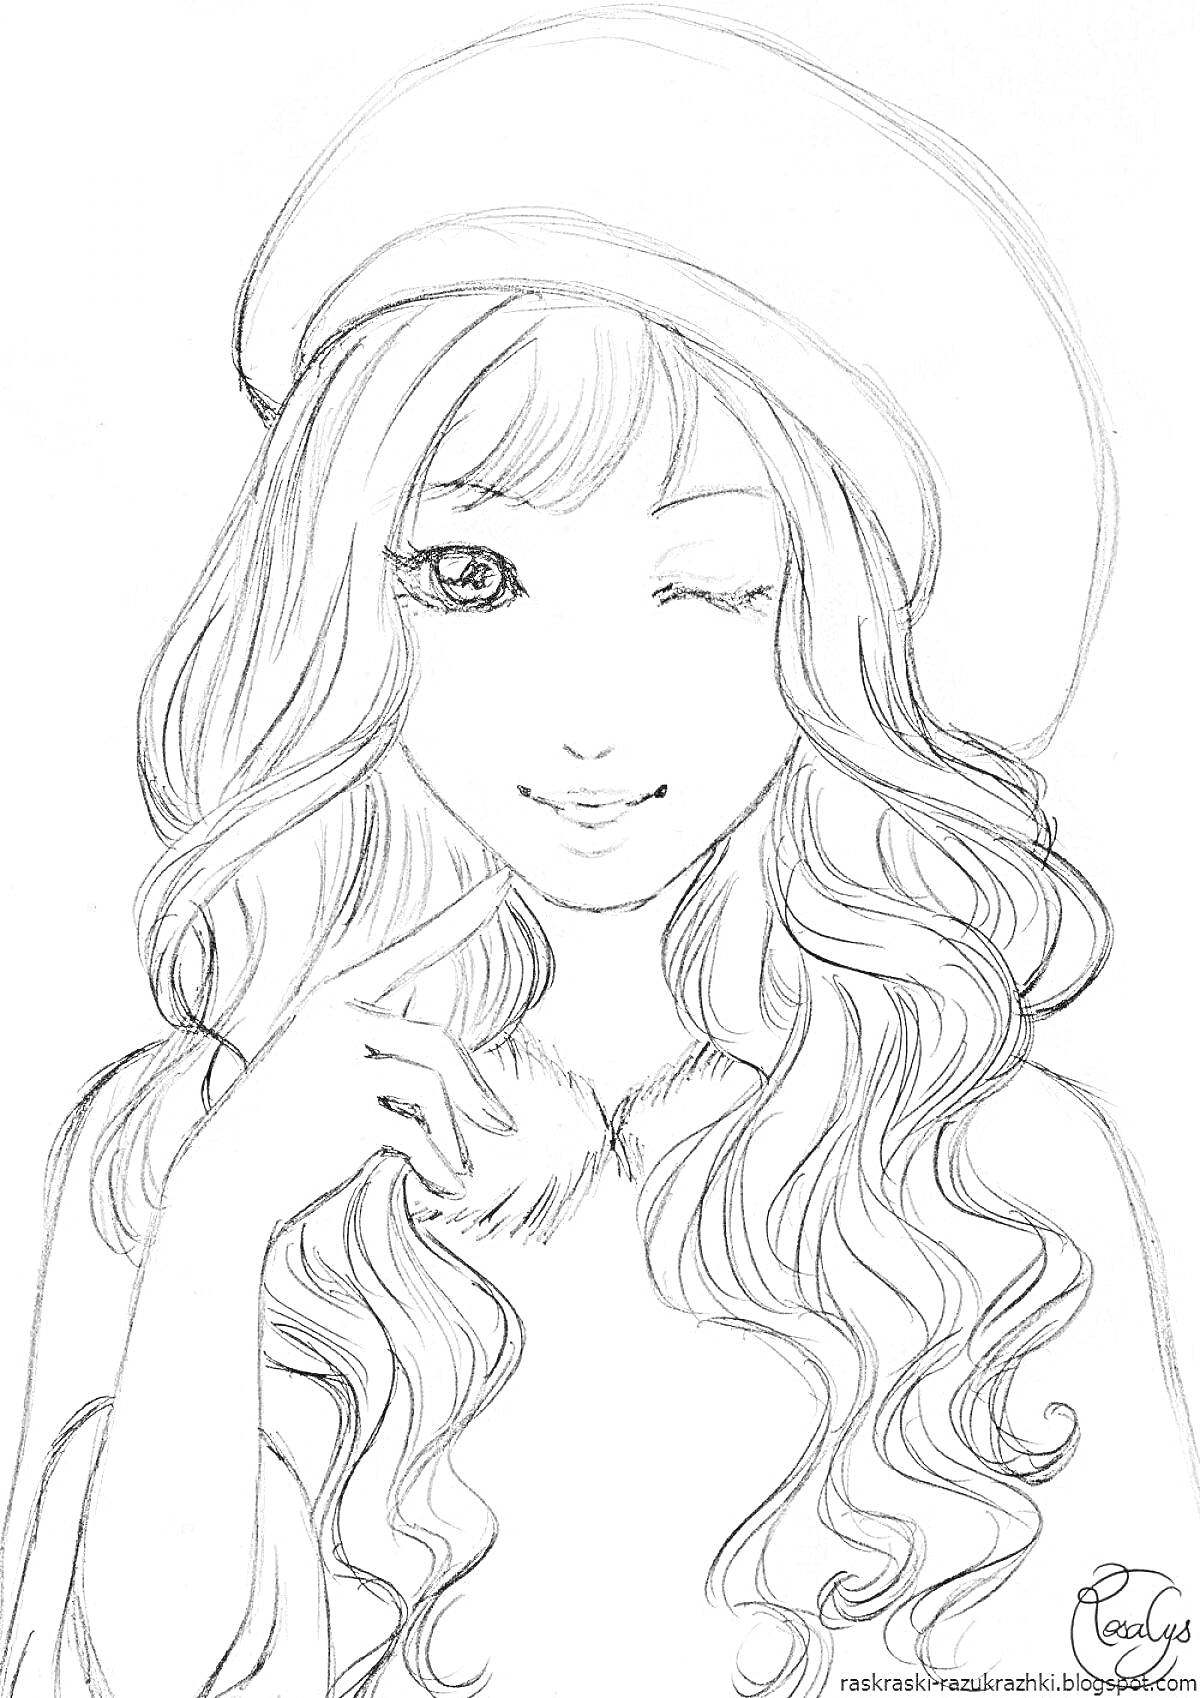 Раскраска Девушка с длинными волнистыми волосами и в берете, подмигивающая, рука у лица